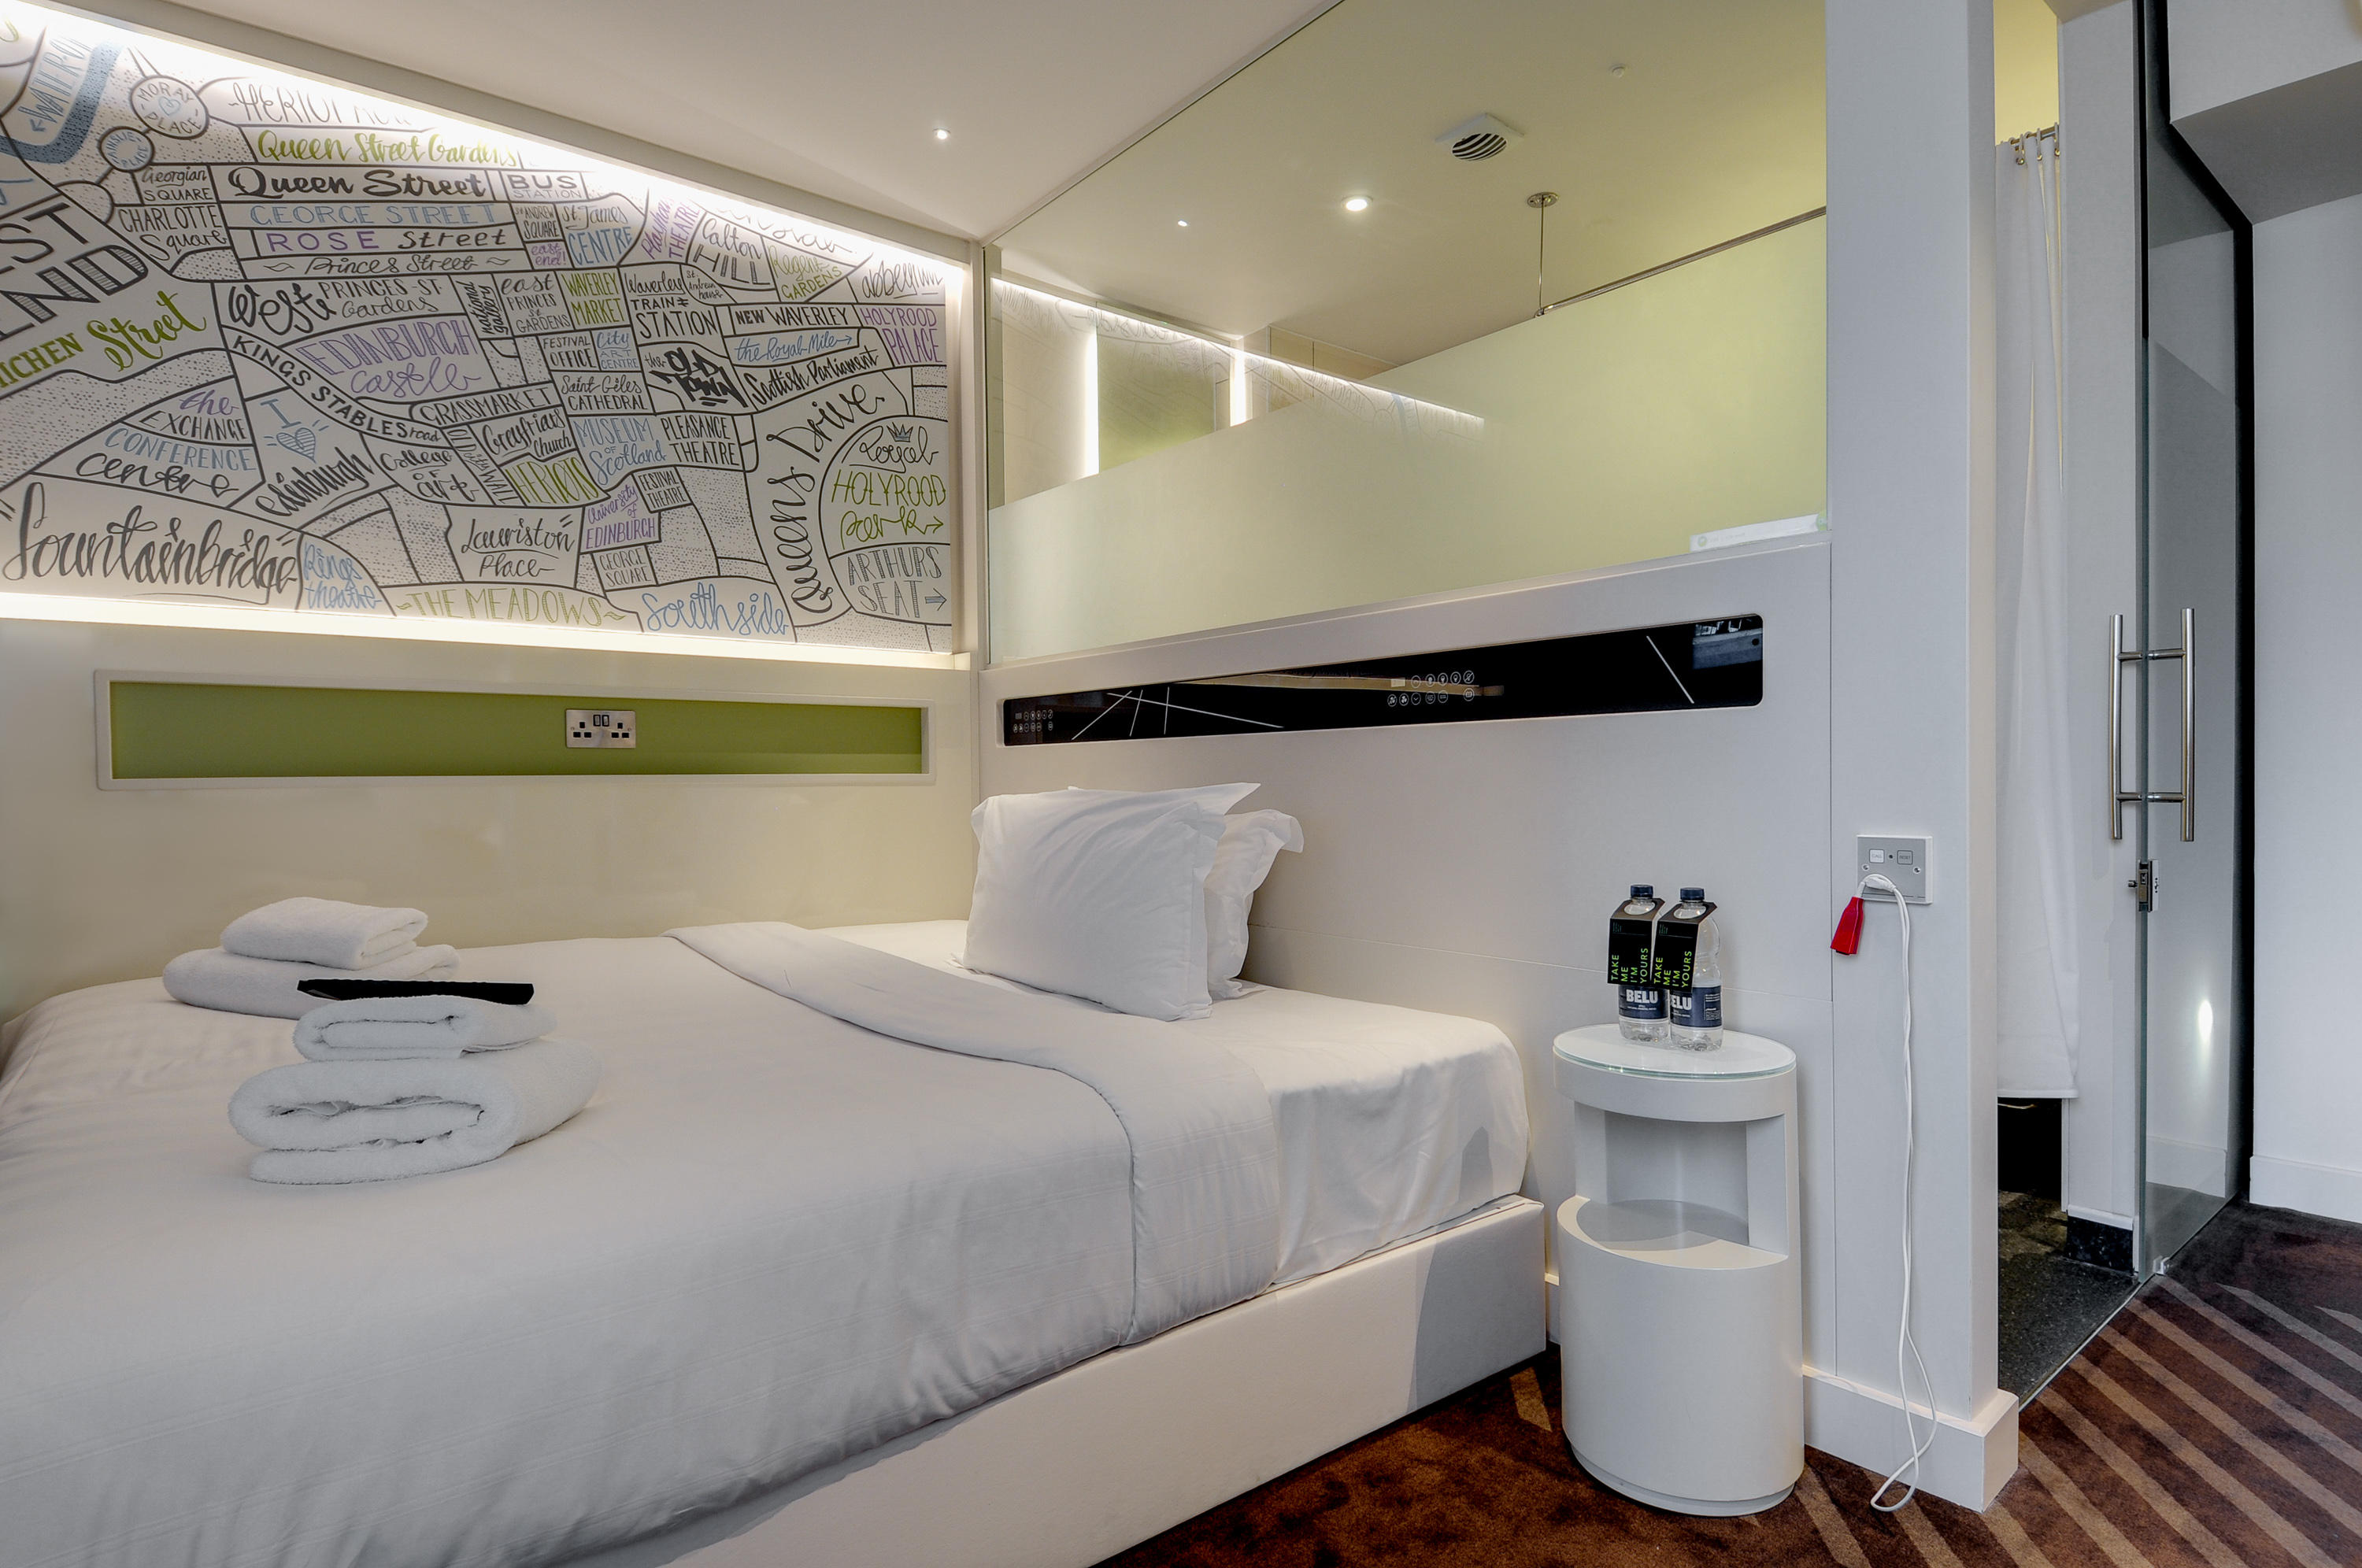 Images hub by Premier Inn London Covent Garden hotel